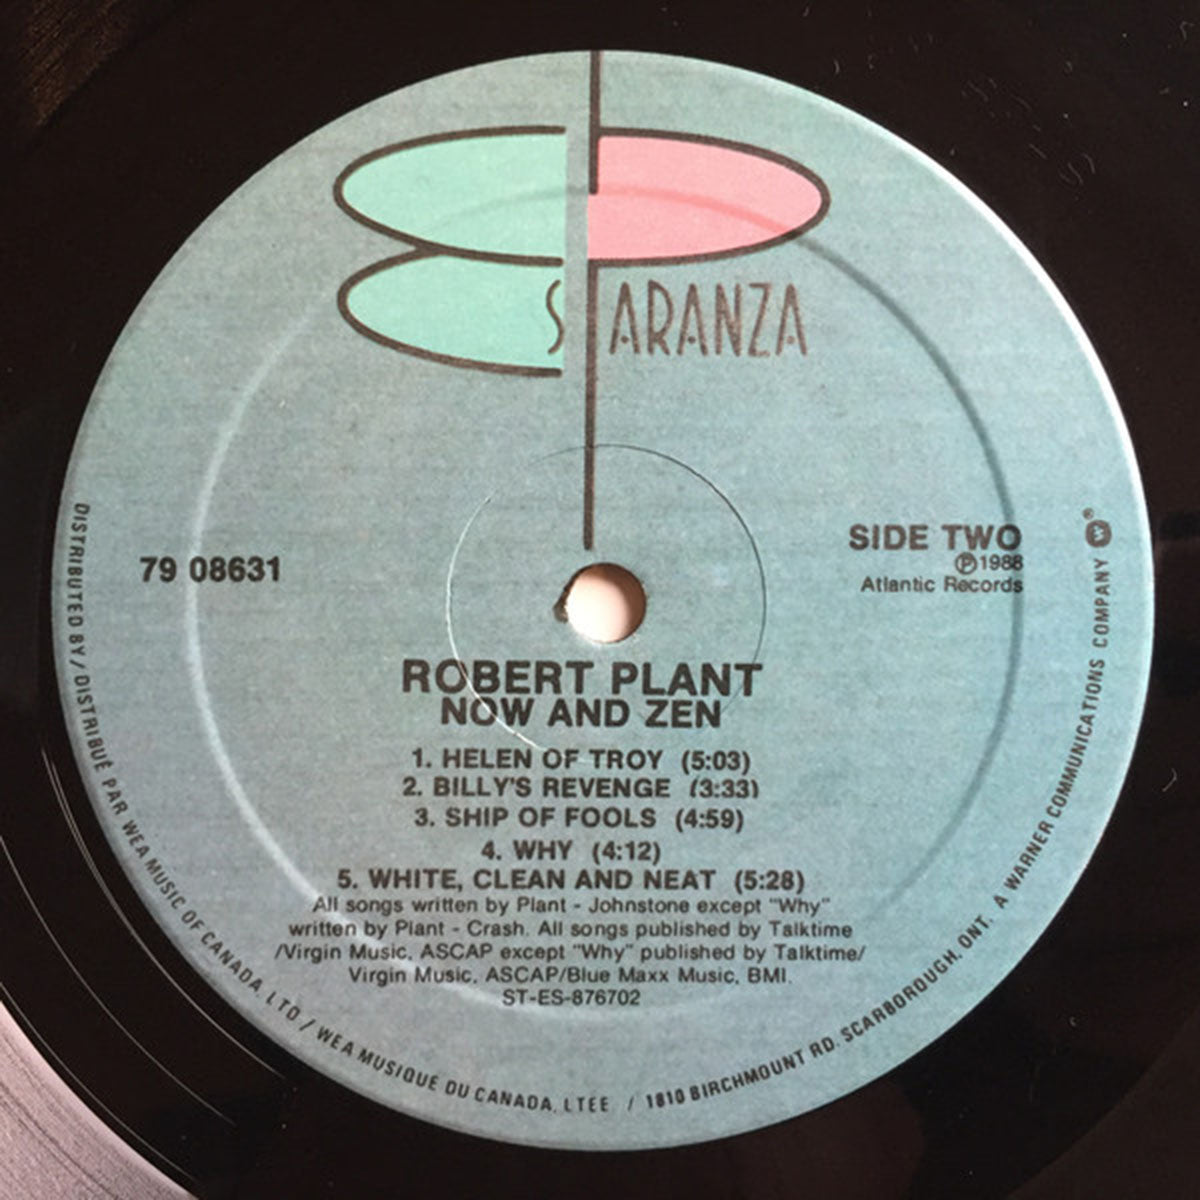 Robert Plant – Now And Zen - 1988 Pressing